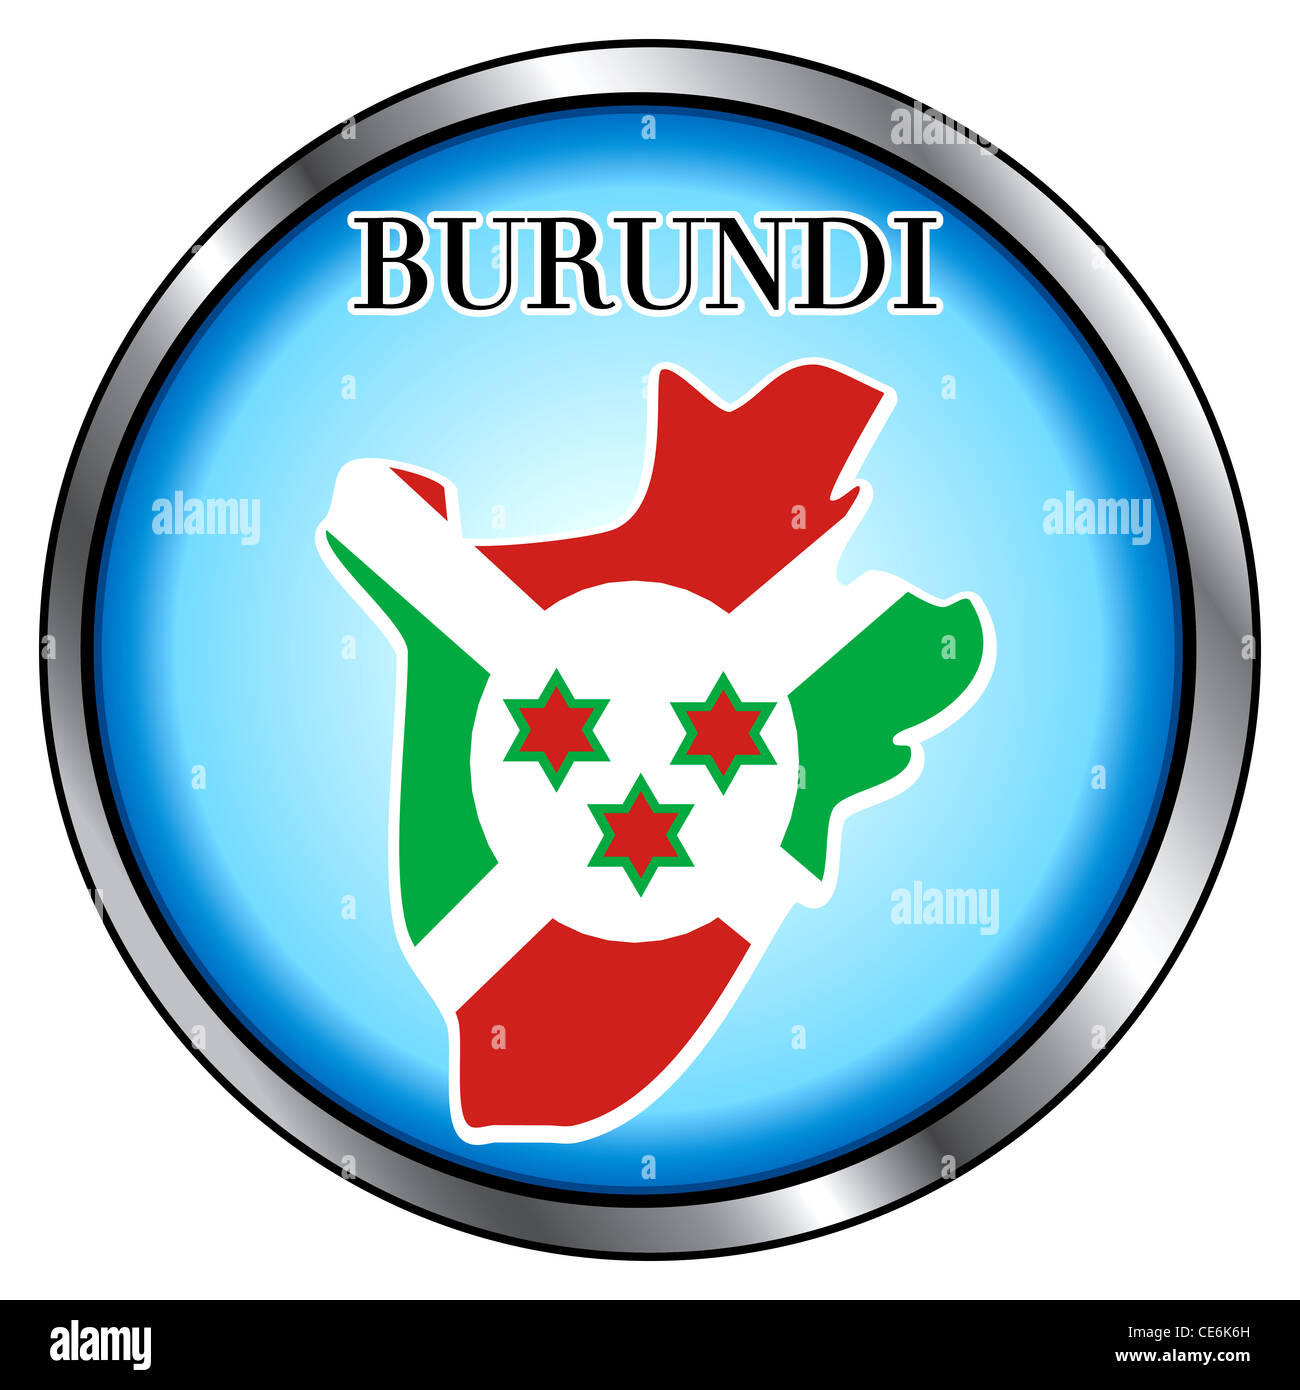 Illustrazione di vettore per il Burundi, tasto rotondo. Foto Stock